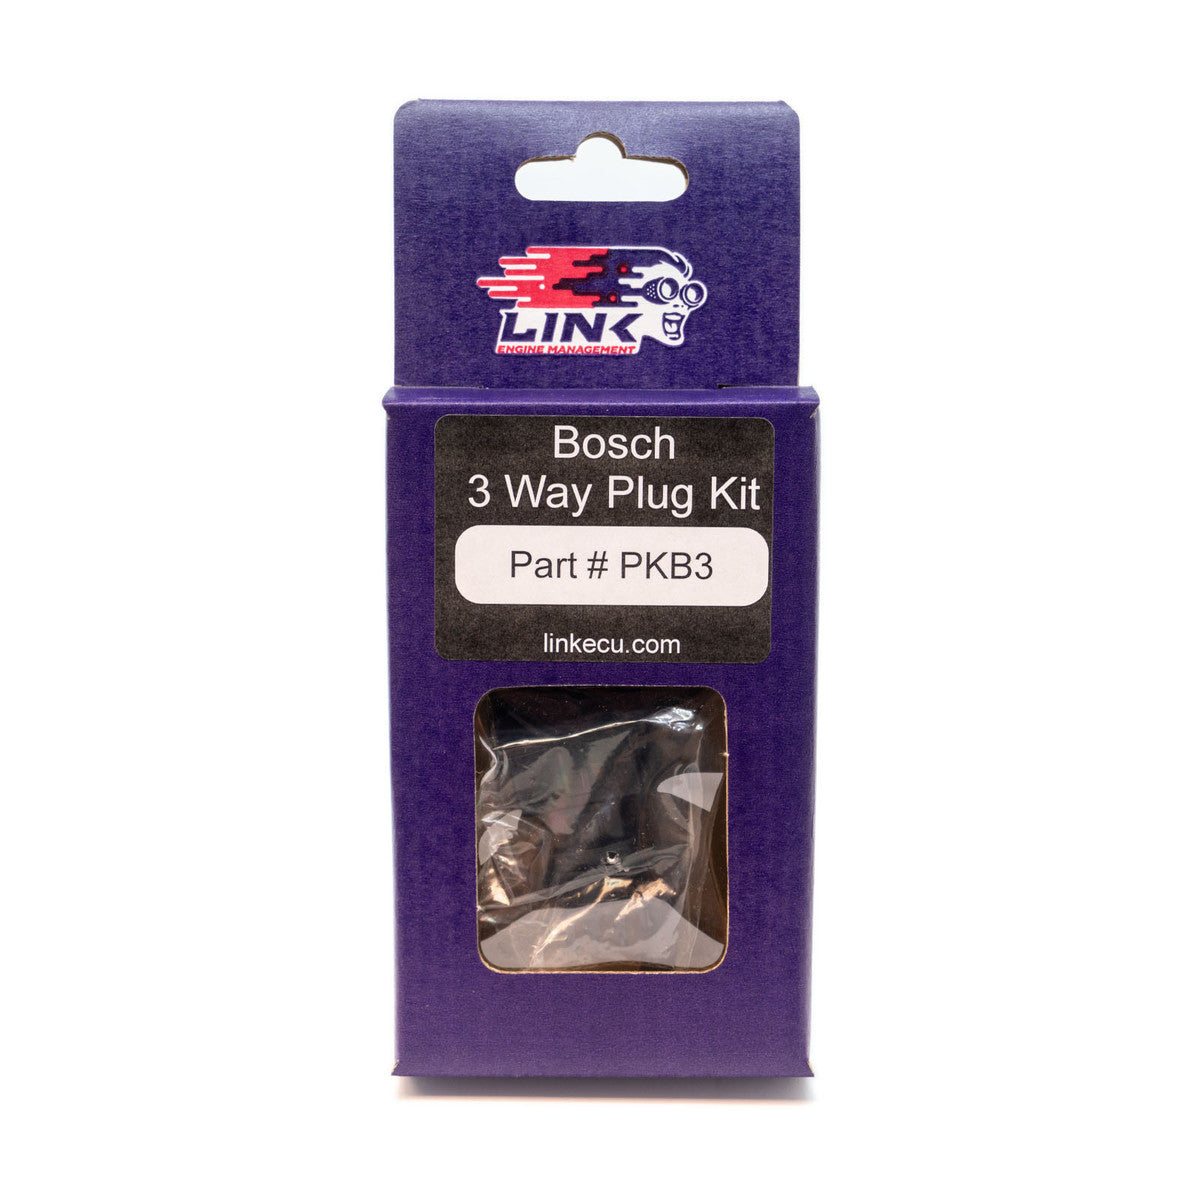 Bosch 3 Way Plug Kit